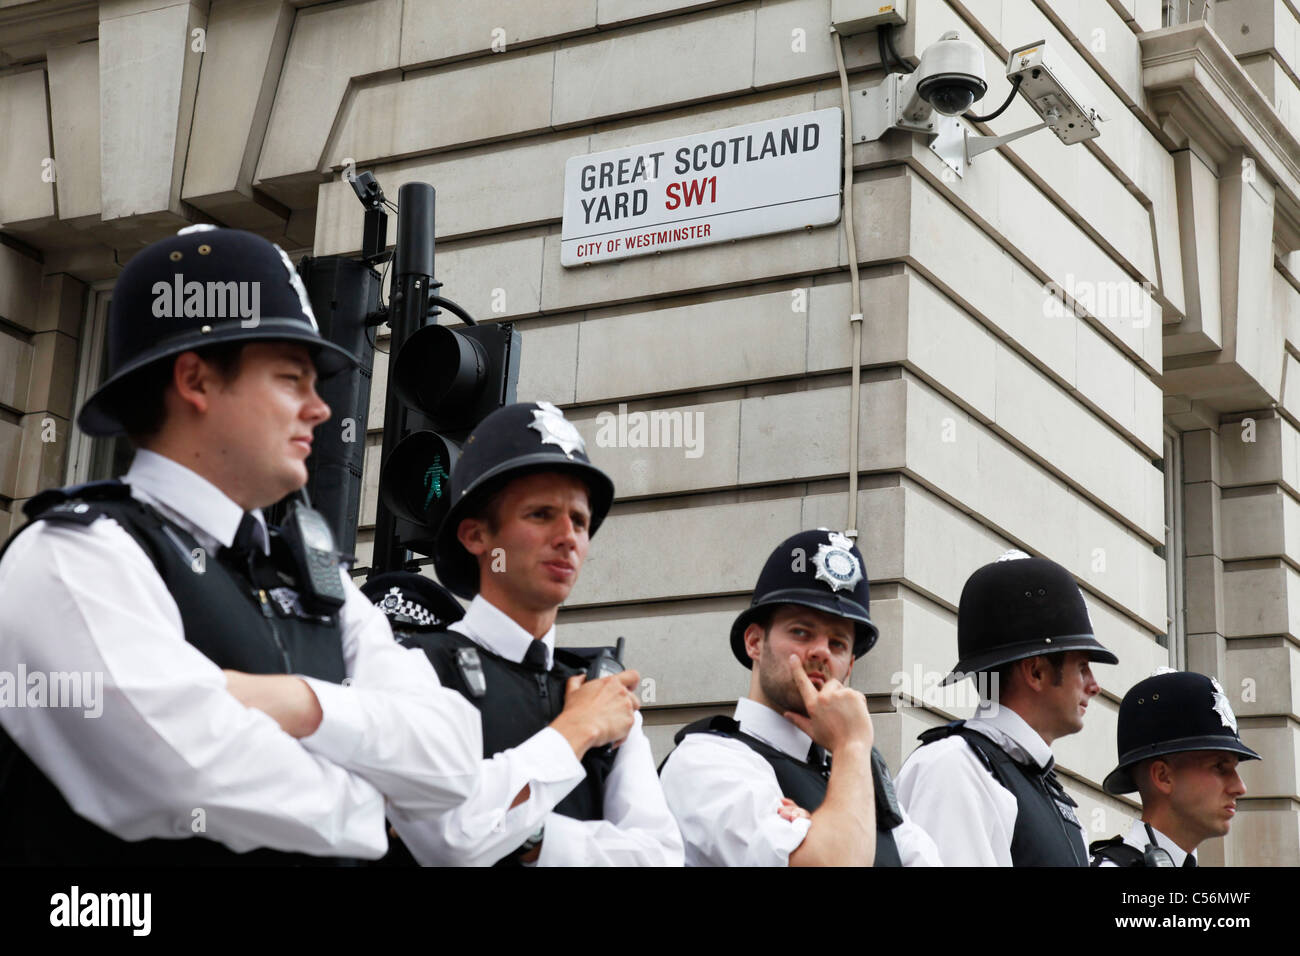 Metropolitan Police versammeln, um Great Scotland Yard in London zu schützen. Es war hier die ursprüngliche traf Polizeikommissare Büro war. Stockfoto